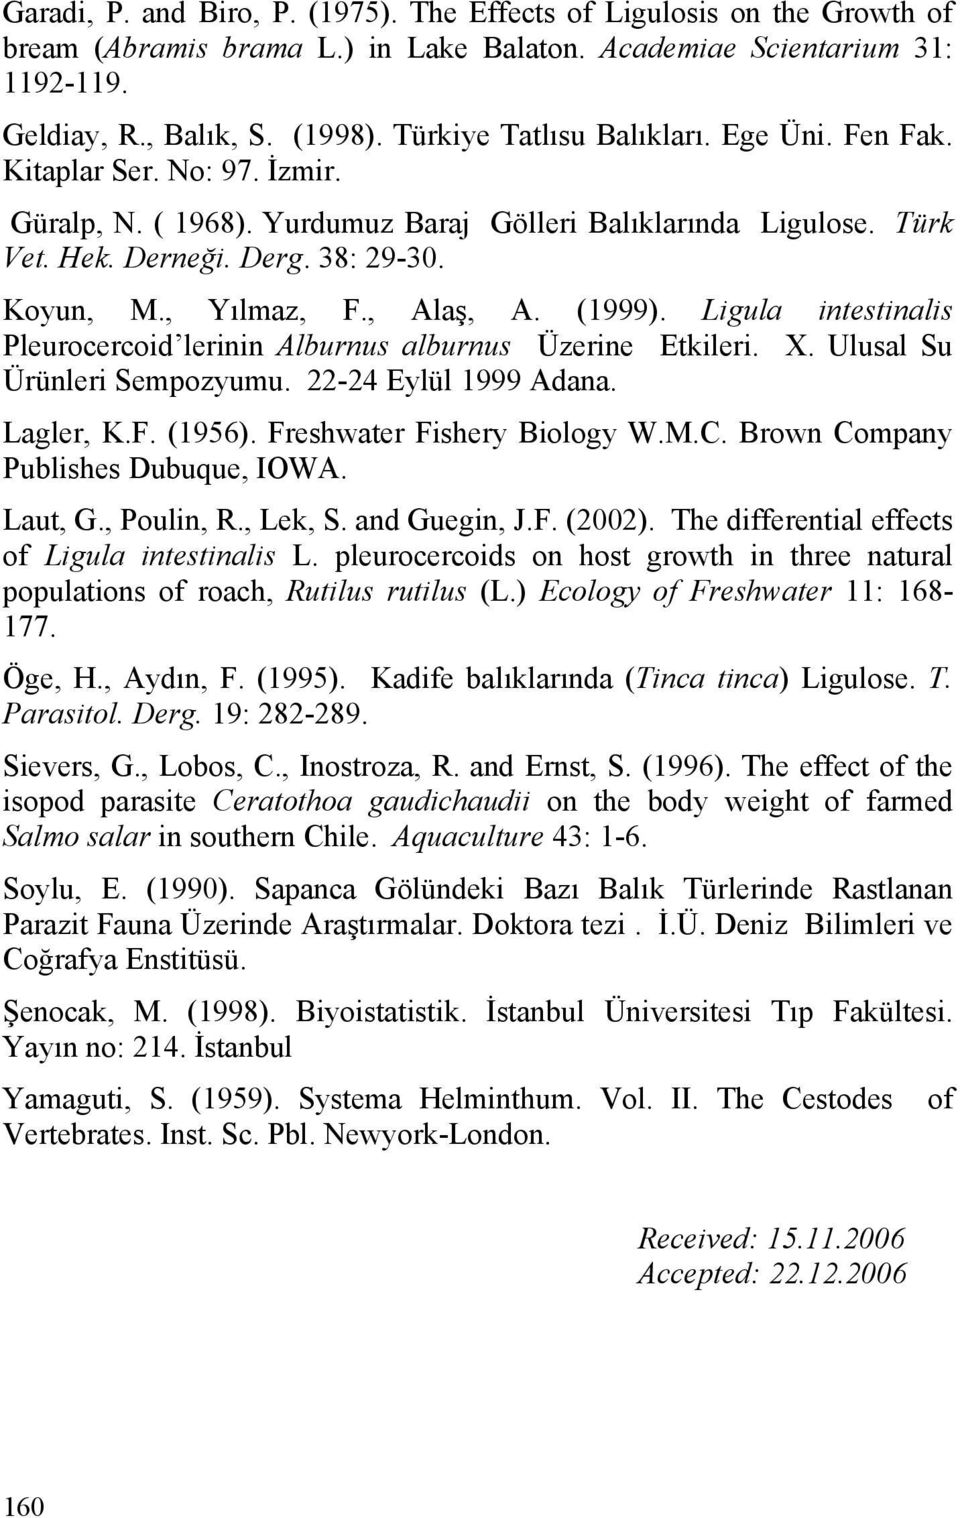 , Yılmaz, F., Alaş, A. (1999). Ligula intestinalis Pleurocercoid lerinin Alburnus alburnus Üzerine Etkileri. X. Ulusal Su Ürünleri Sempozyumu. 22-24 Eylül 1999 Adana. Lagler, K.F. (1956).